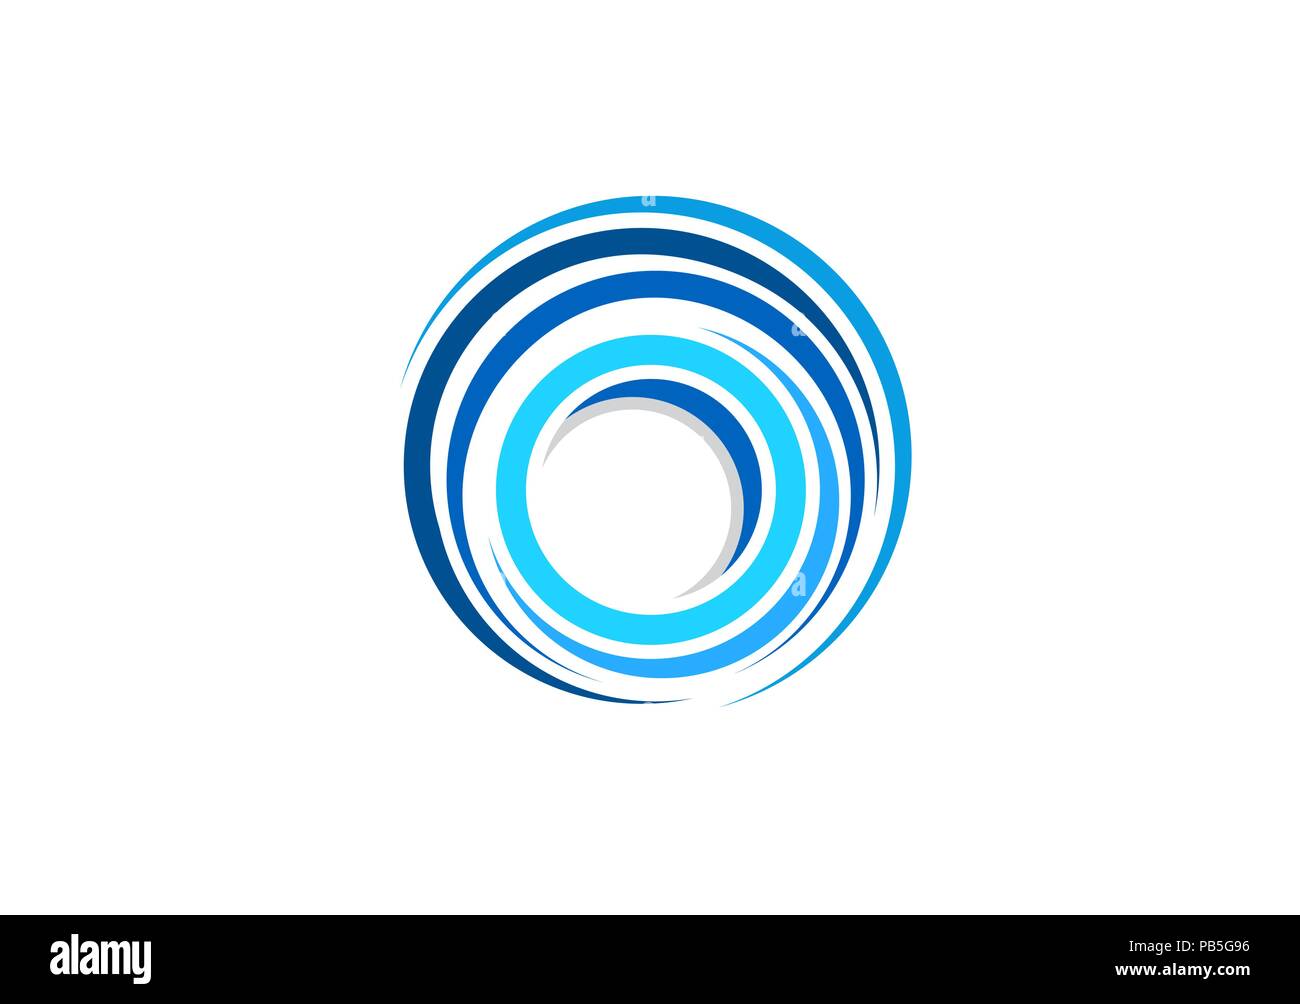 Kugel Kreis Elemente swirl Logo, abstrakte Blue waves Spirale runde Form Symbol, Twist global Wind zeichen Symbol vektor design Vorlage Stock Vektor